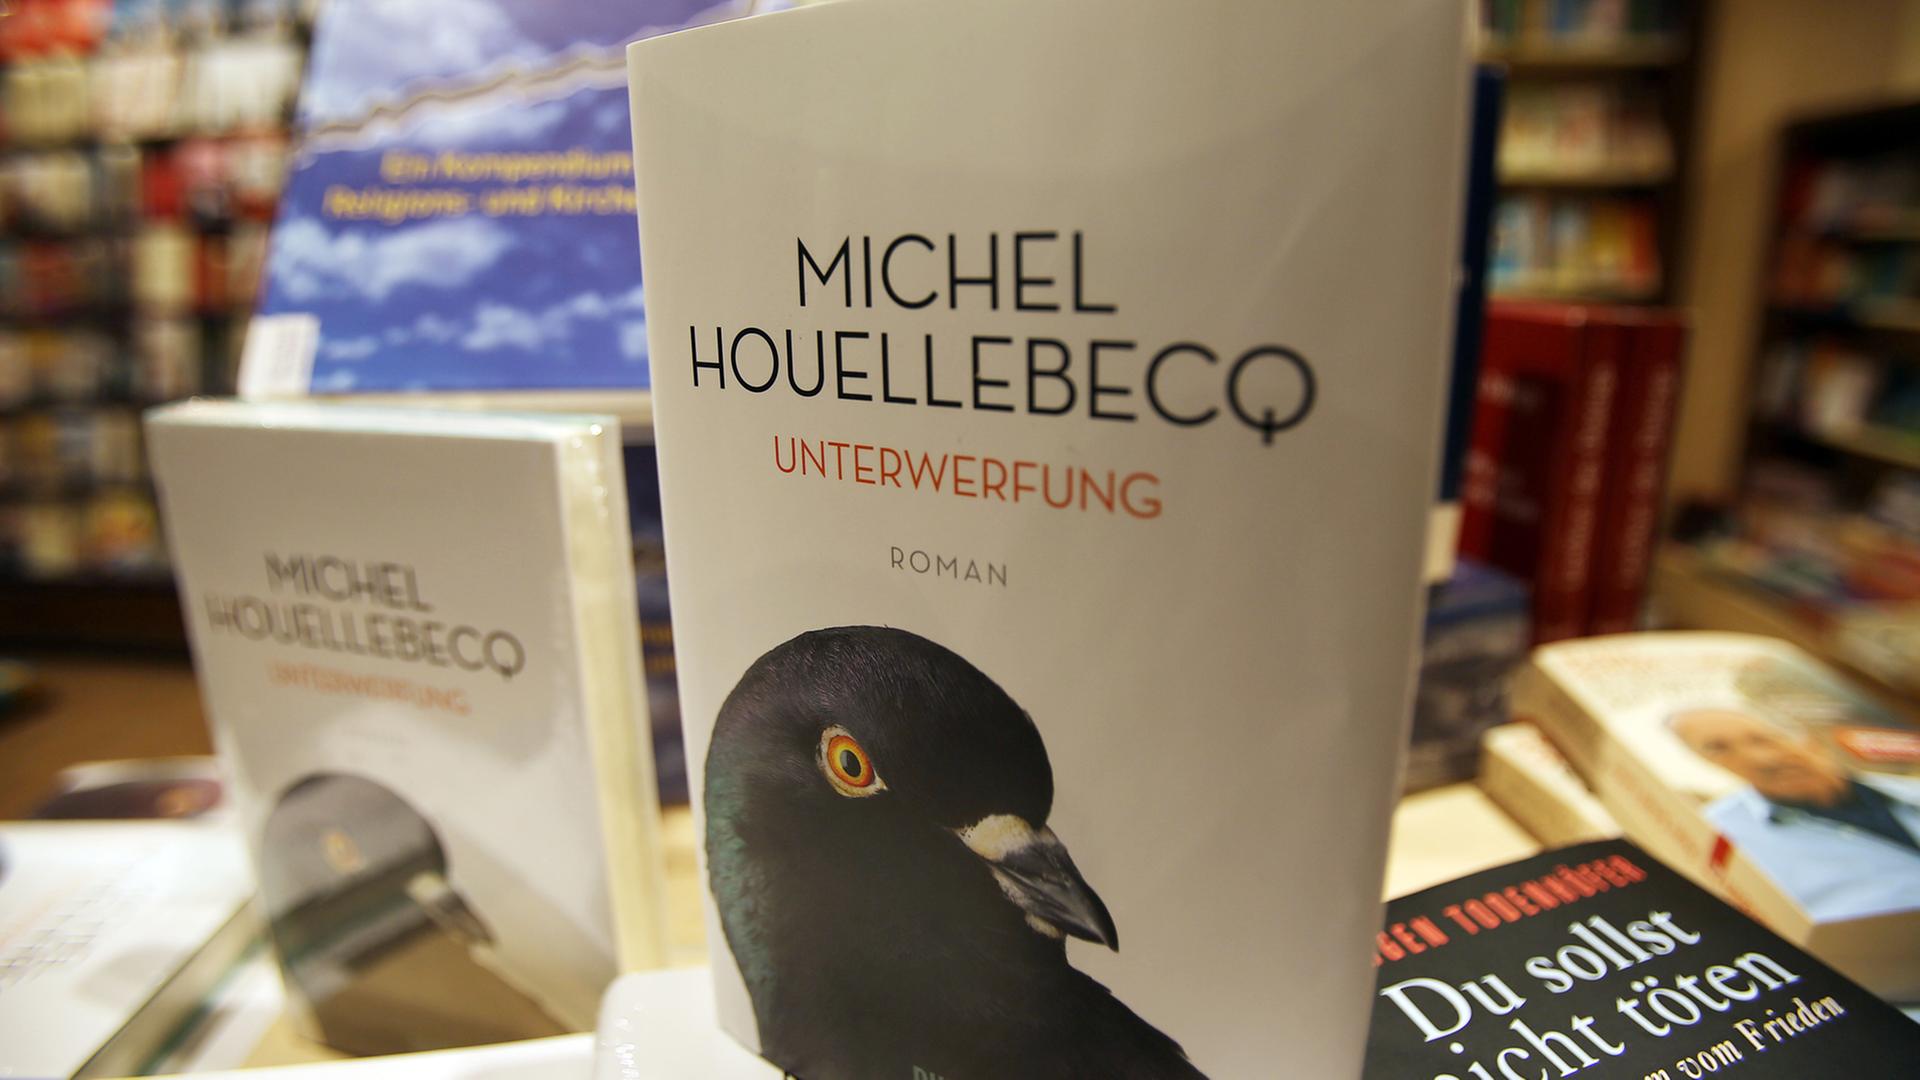 Der Roman "Unterwerfung" von Michel Houellebecq liegt in einer Kölner Bahnhofsbuchhandlung aus.